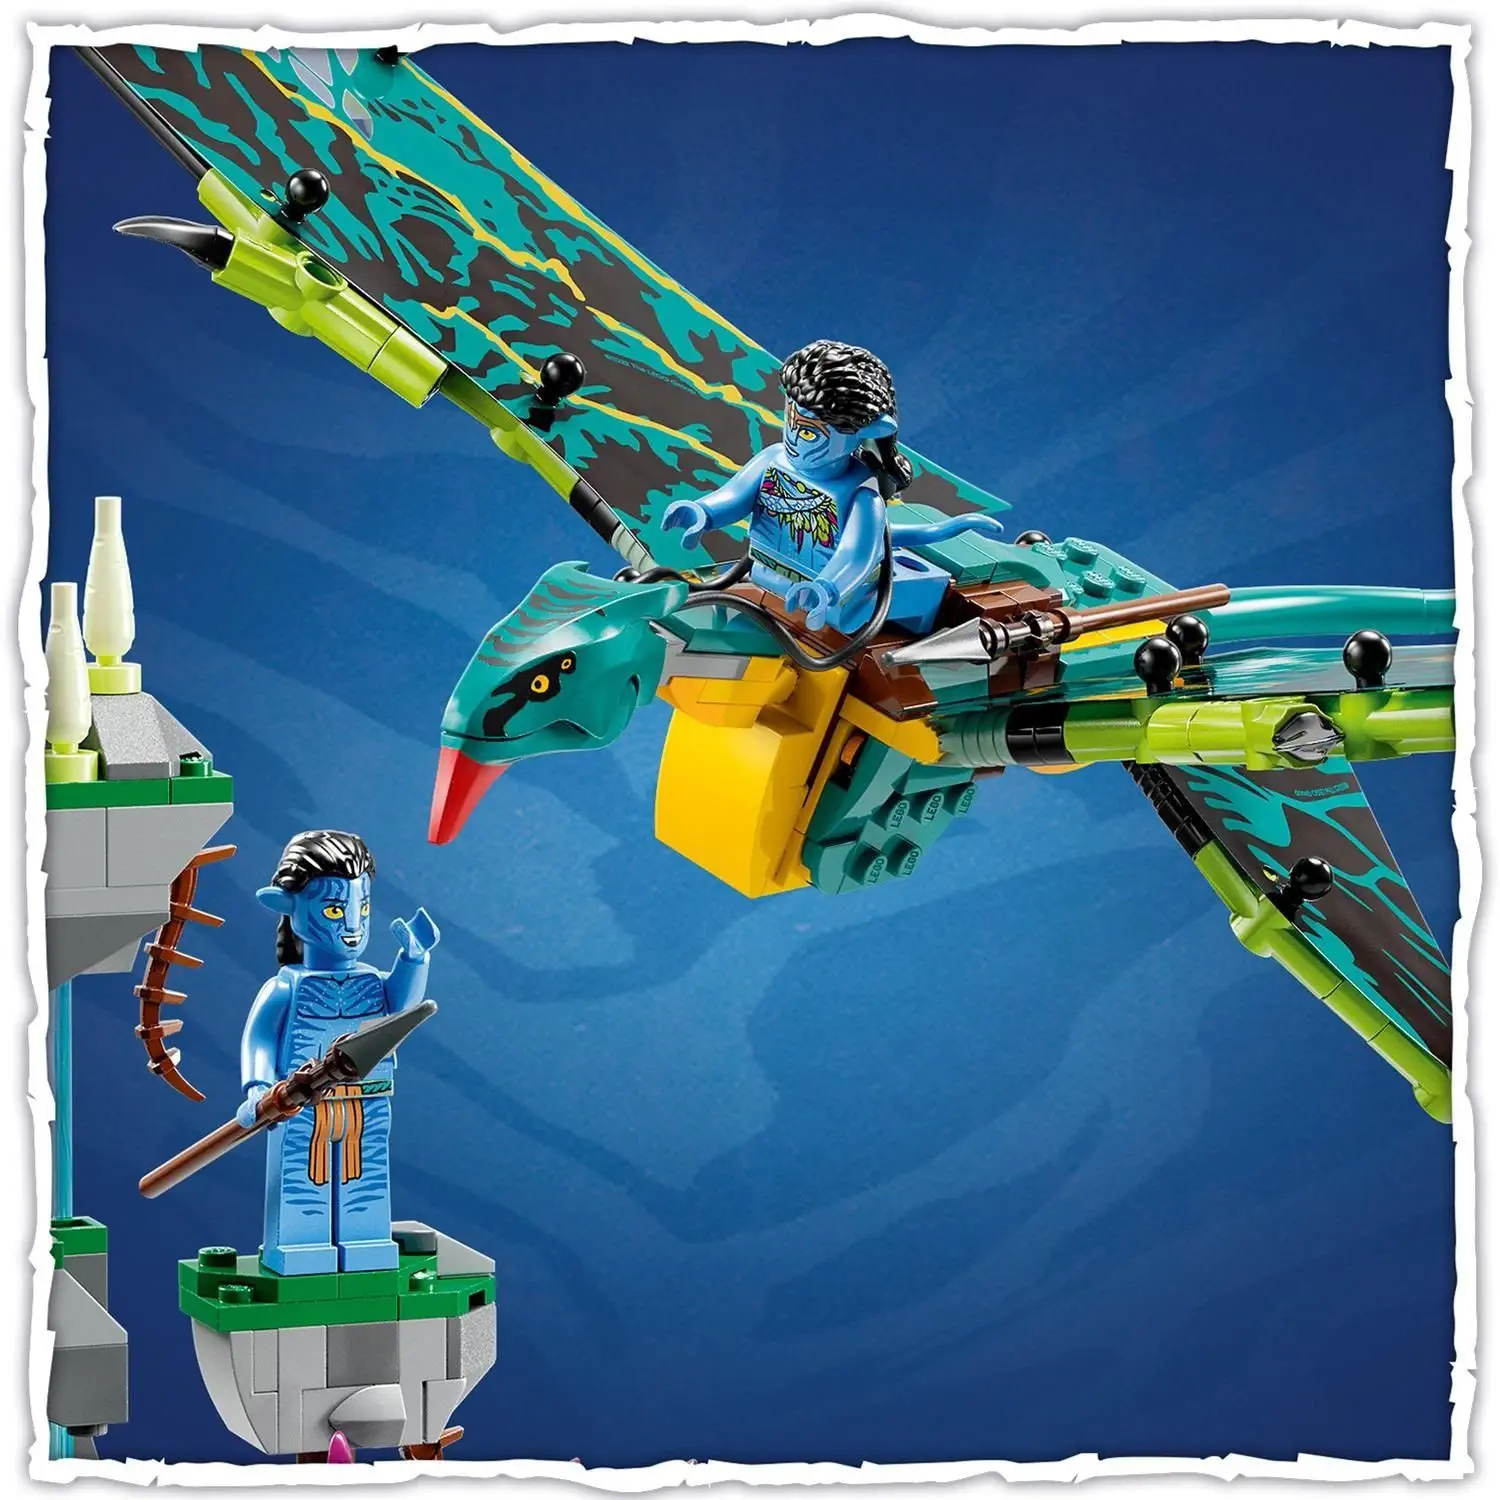 LEGO Avatar 75572 Jake a Neytiri: Prvý let na banshee